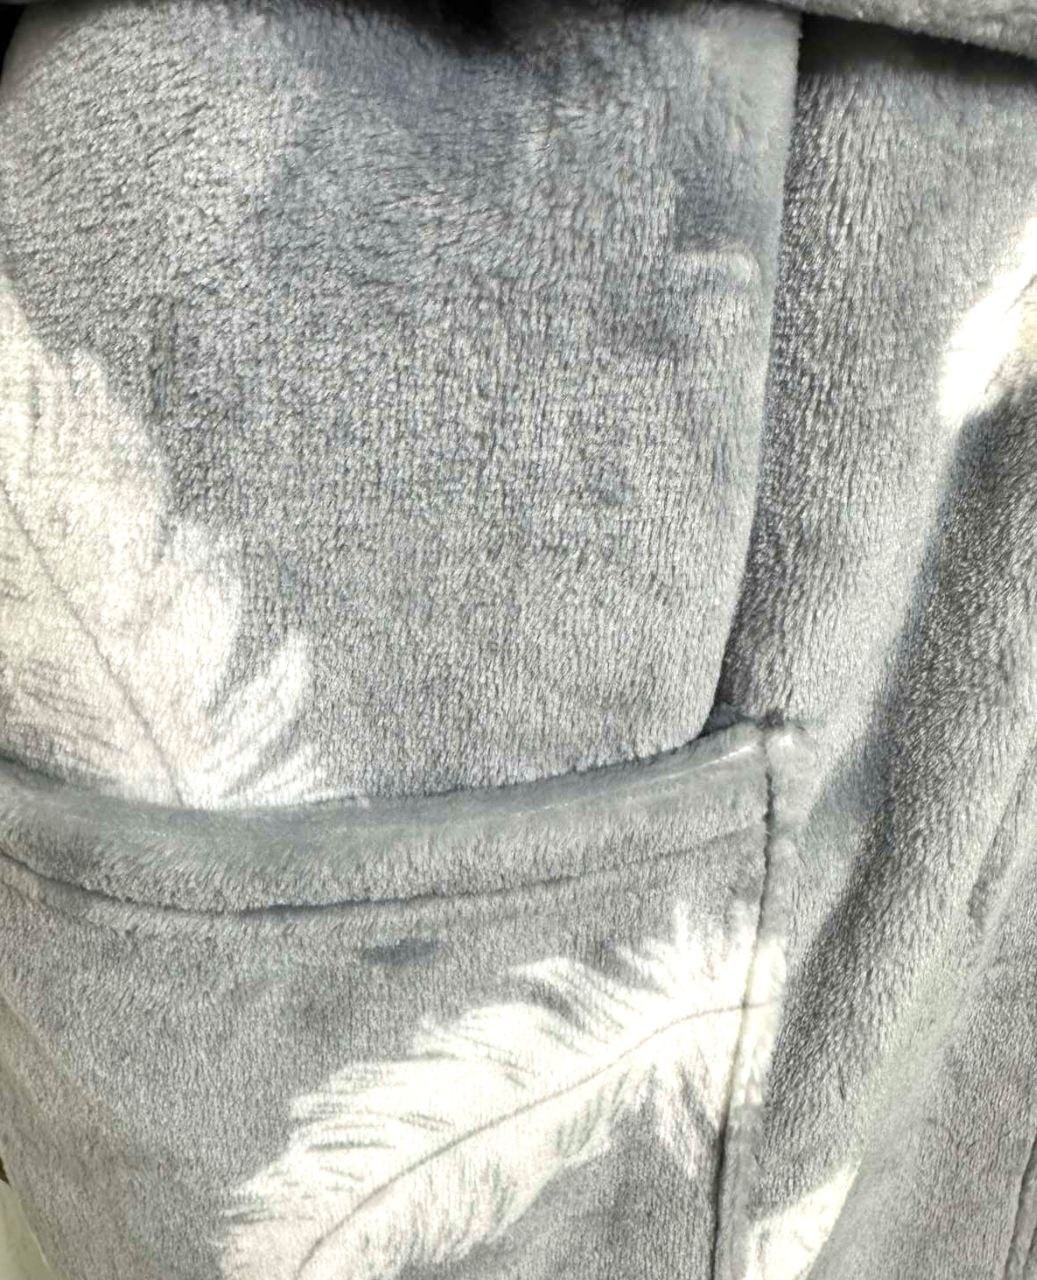 Жіночий махровий халат "ПАУЛА" сірого кольору із зображенням пір'їнок рукав тричетвертих, Сірий, 56-58